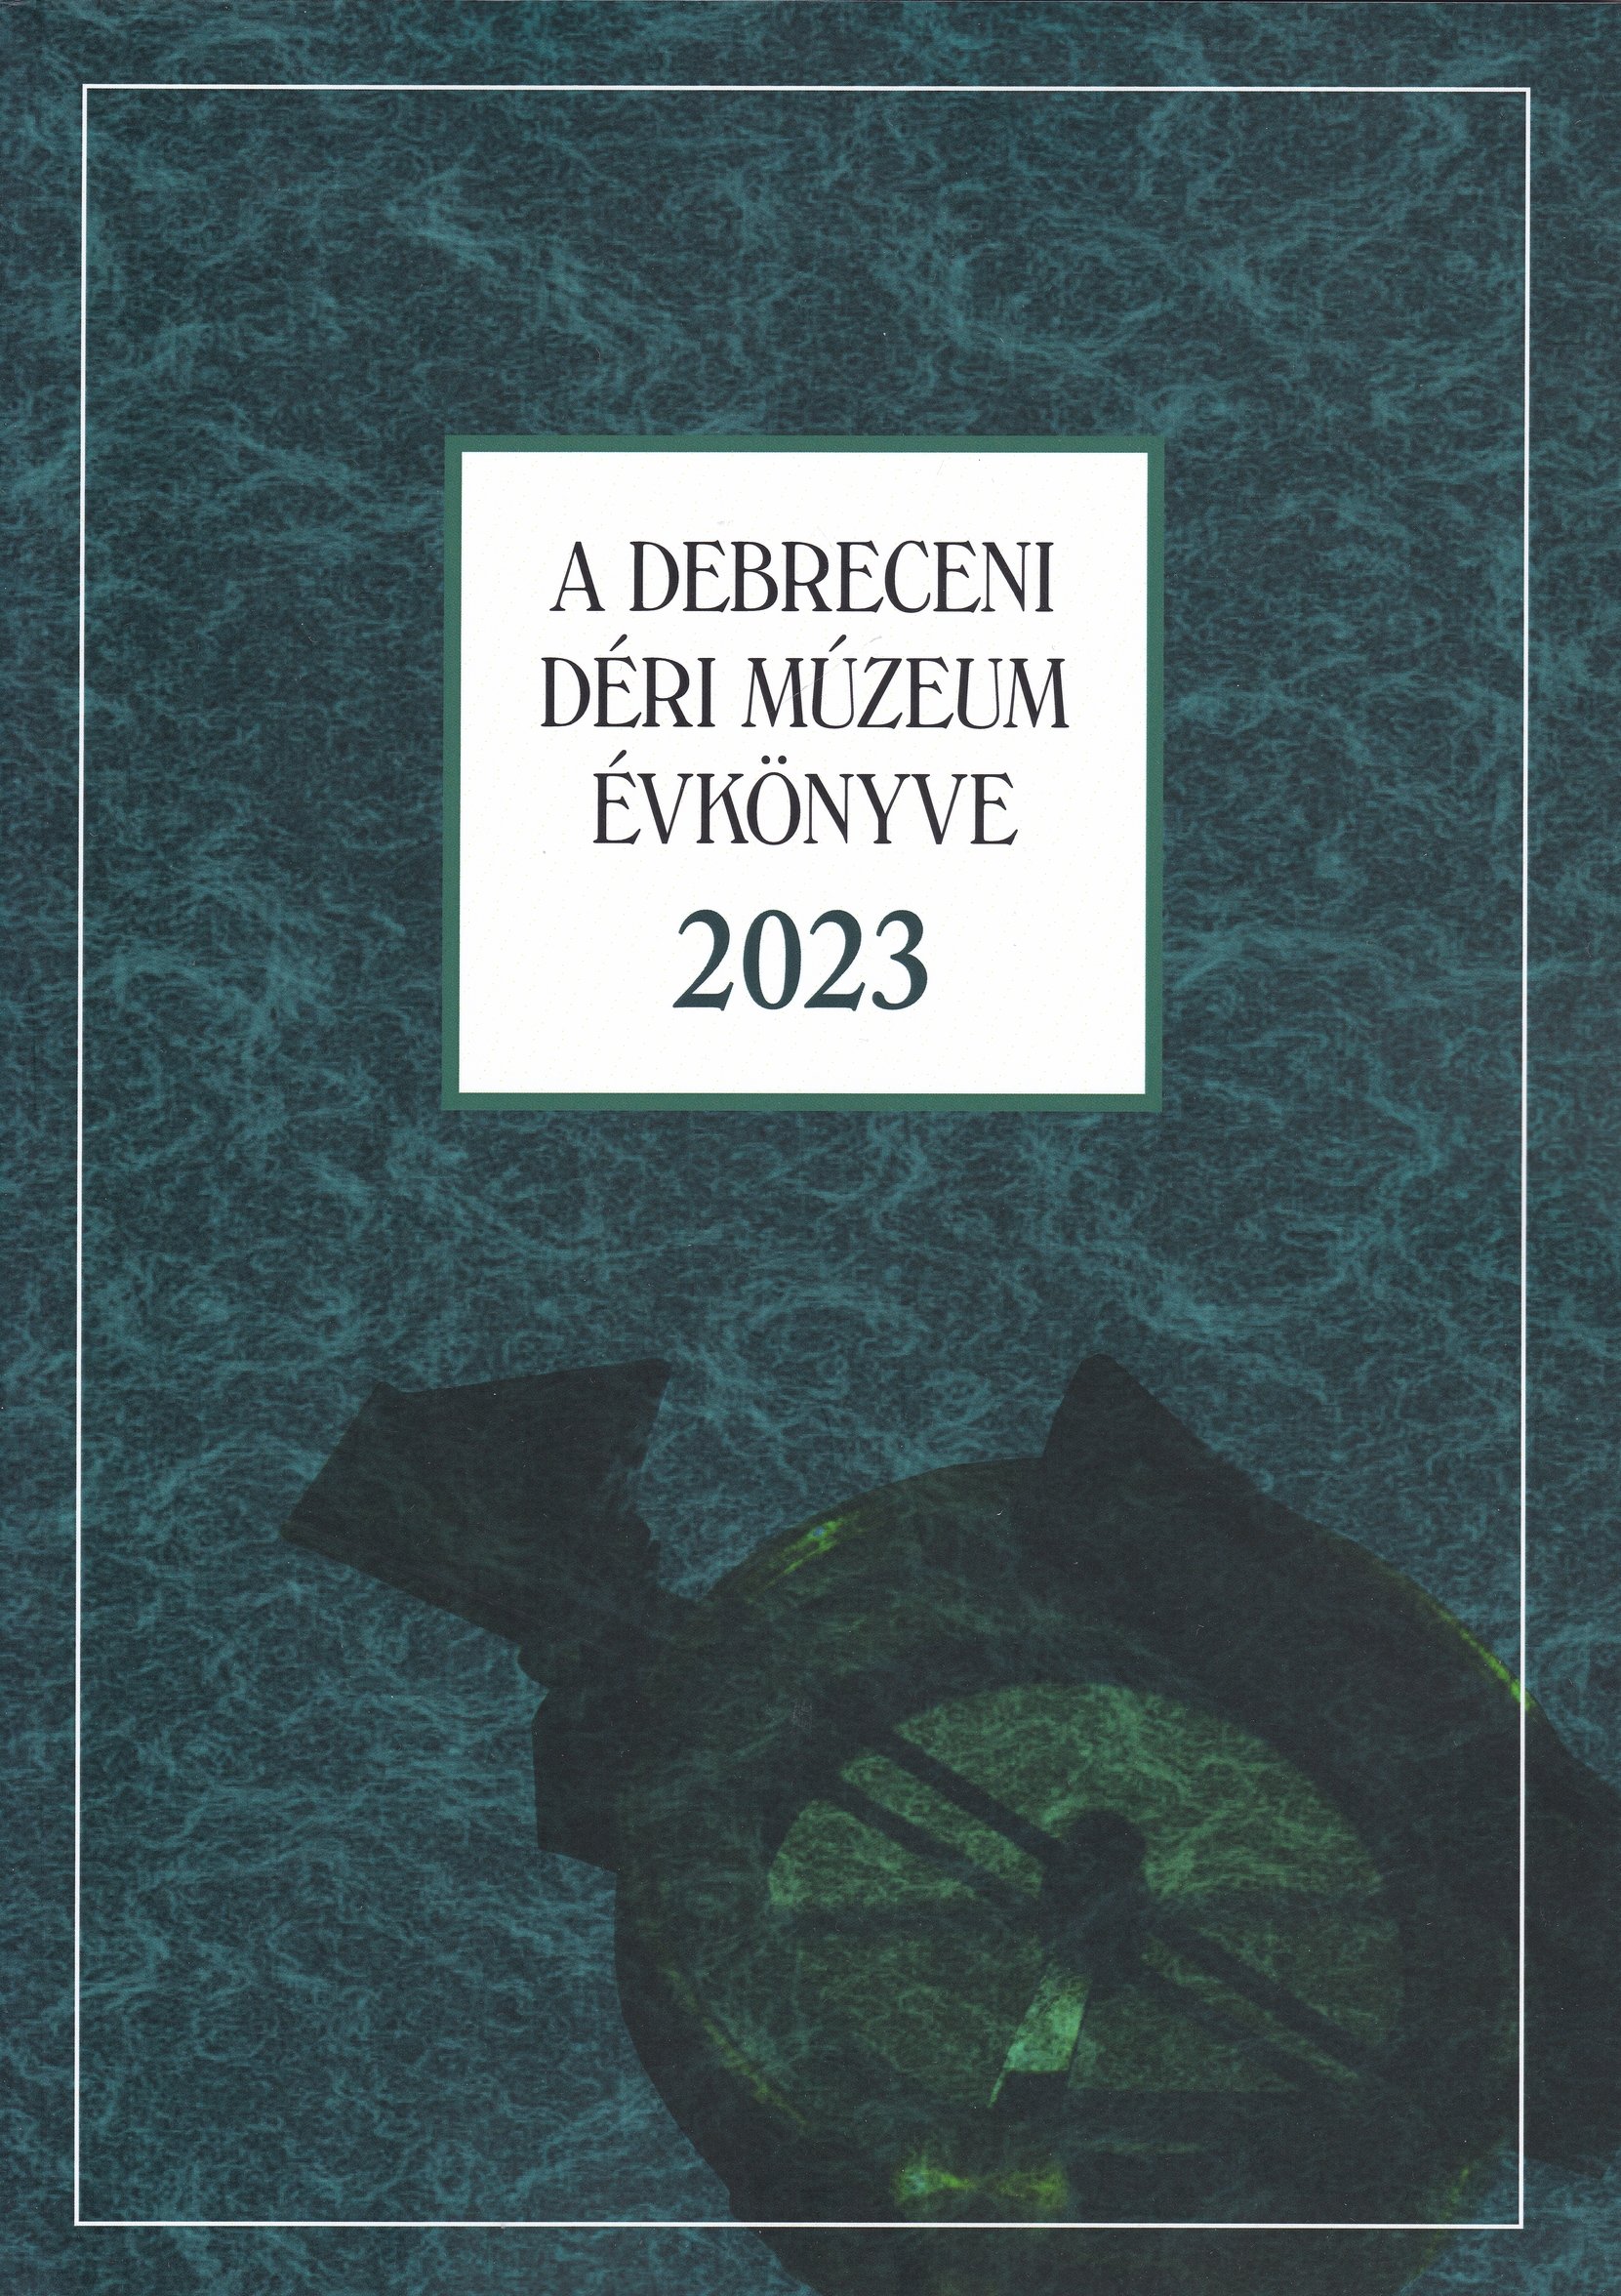 A Debreceni Déri Múzeum kiadványai 2023/94. - A Debreceni Déri Múzeum Évkönyve 2023 (Rippl-Rónai Múzeum CC BY-NC-ND)